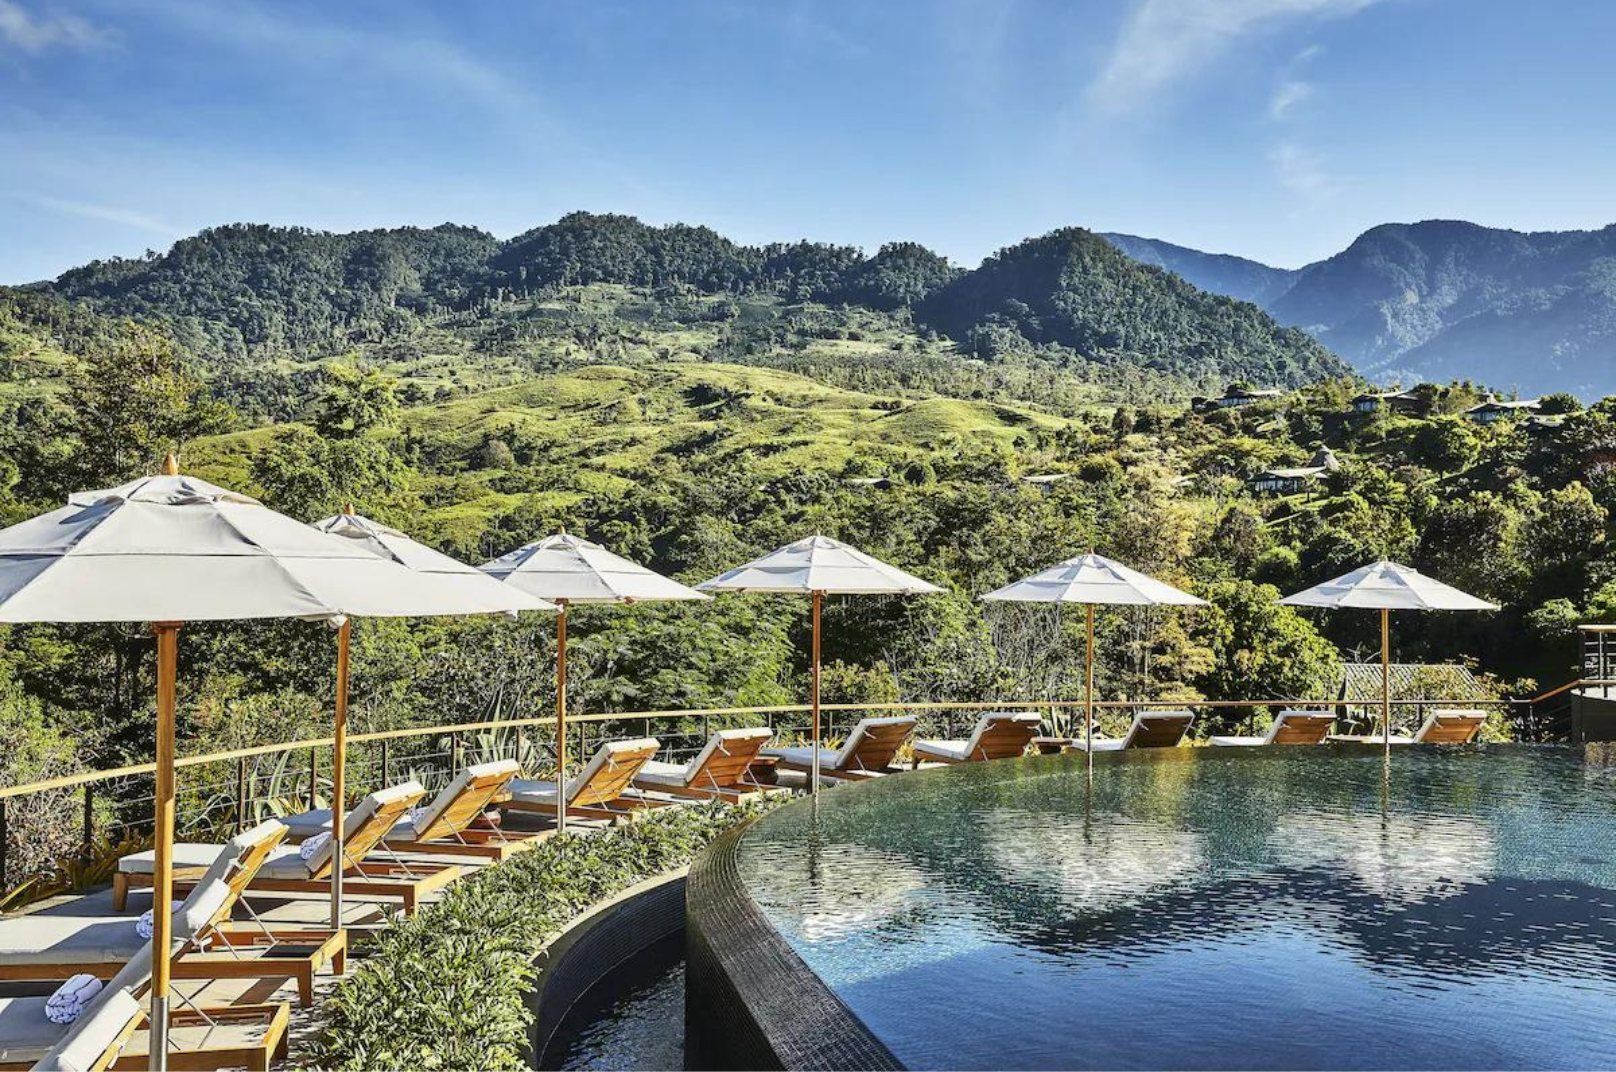 Costa Rica spa hotels